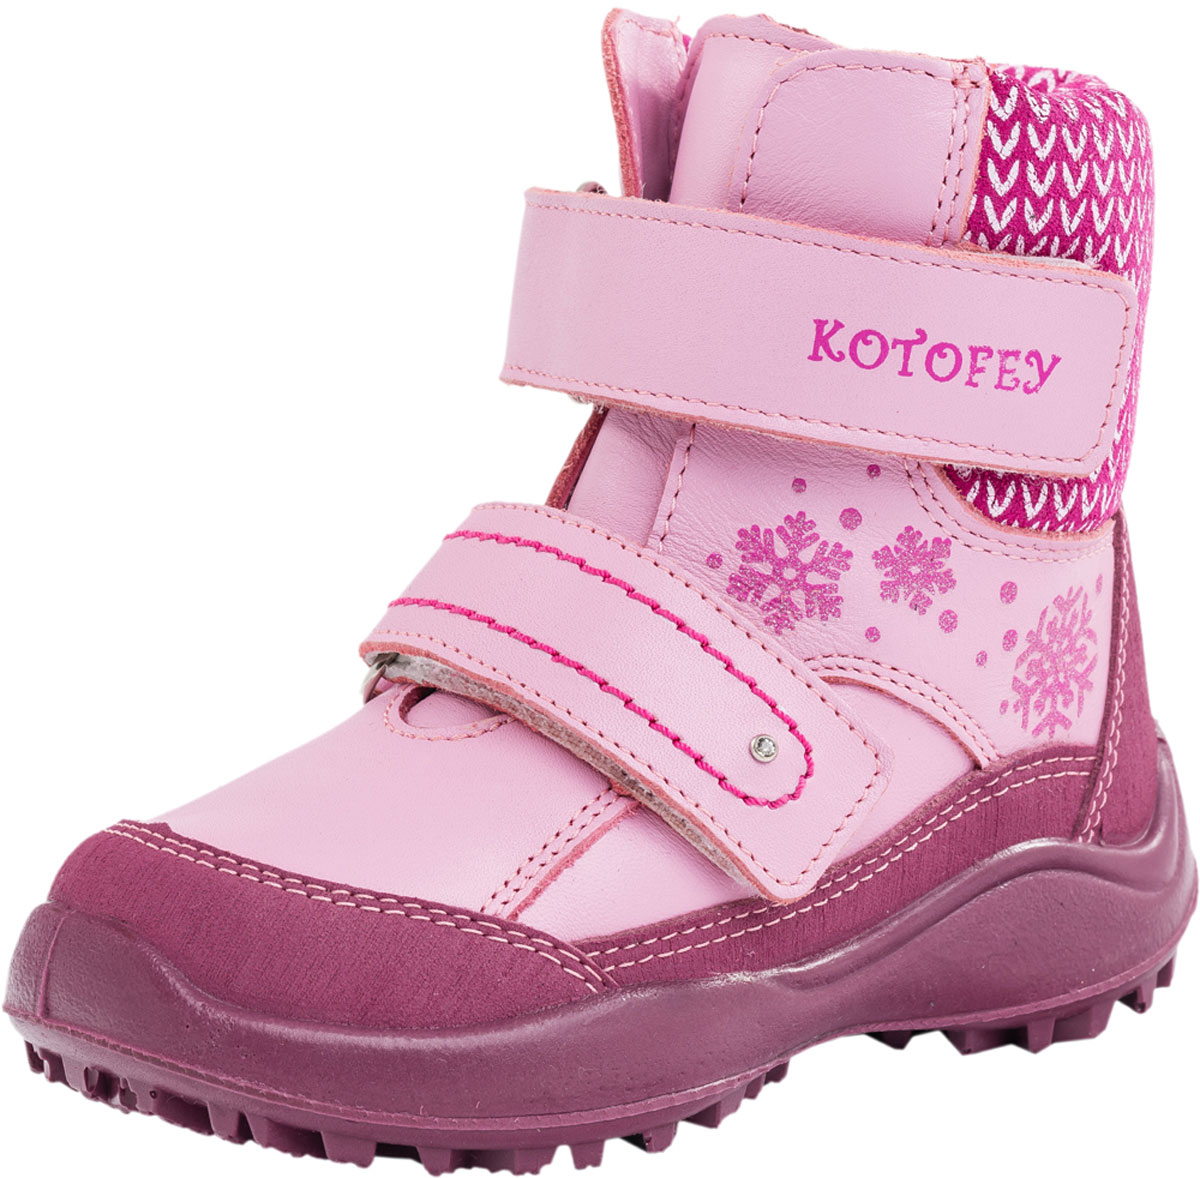 Ботинки для девочки Котофей, цвет: розовый. 252113-51. Размер 25